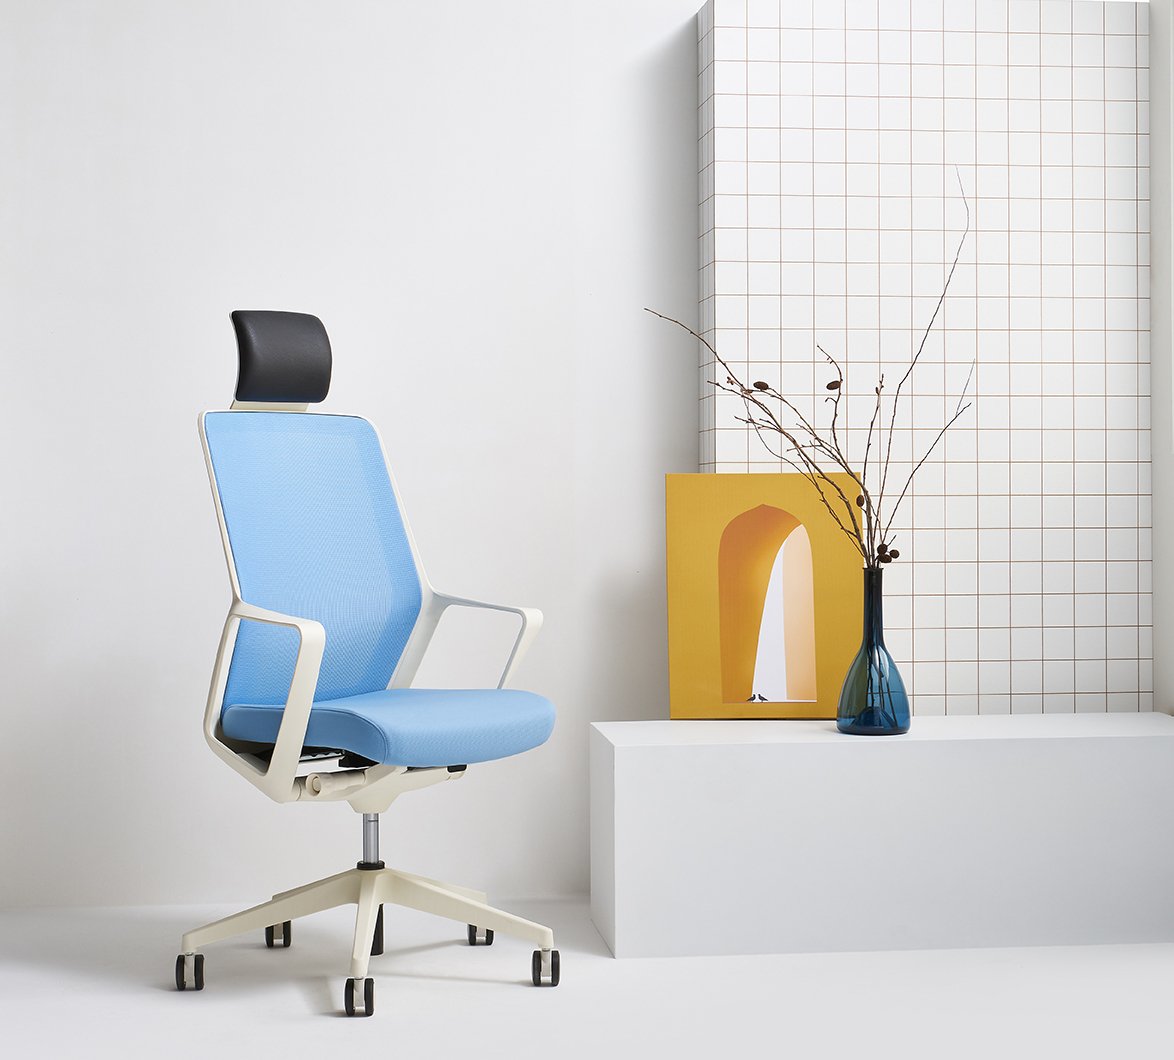 의자, 작품이되다 파트라X생활지음 세계 3대 디자인상 석권 : 네이버 포스트